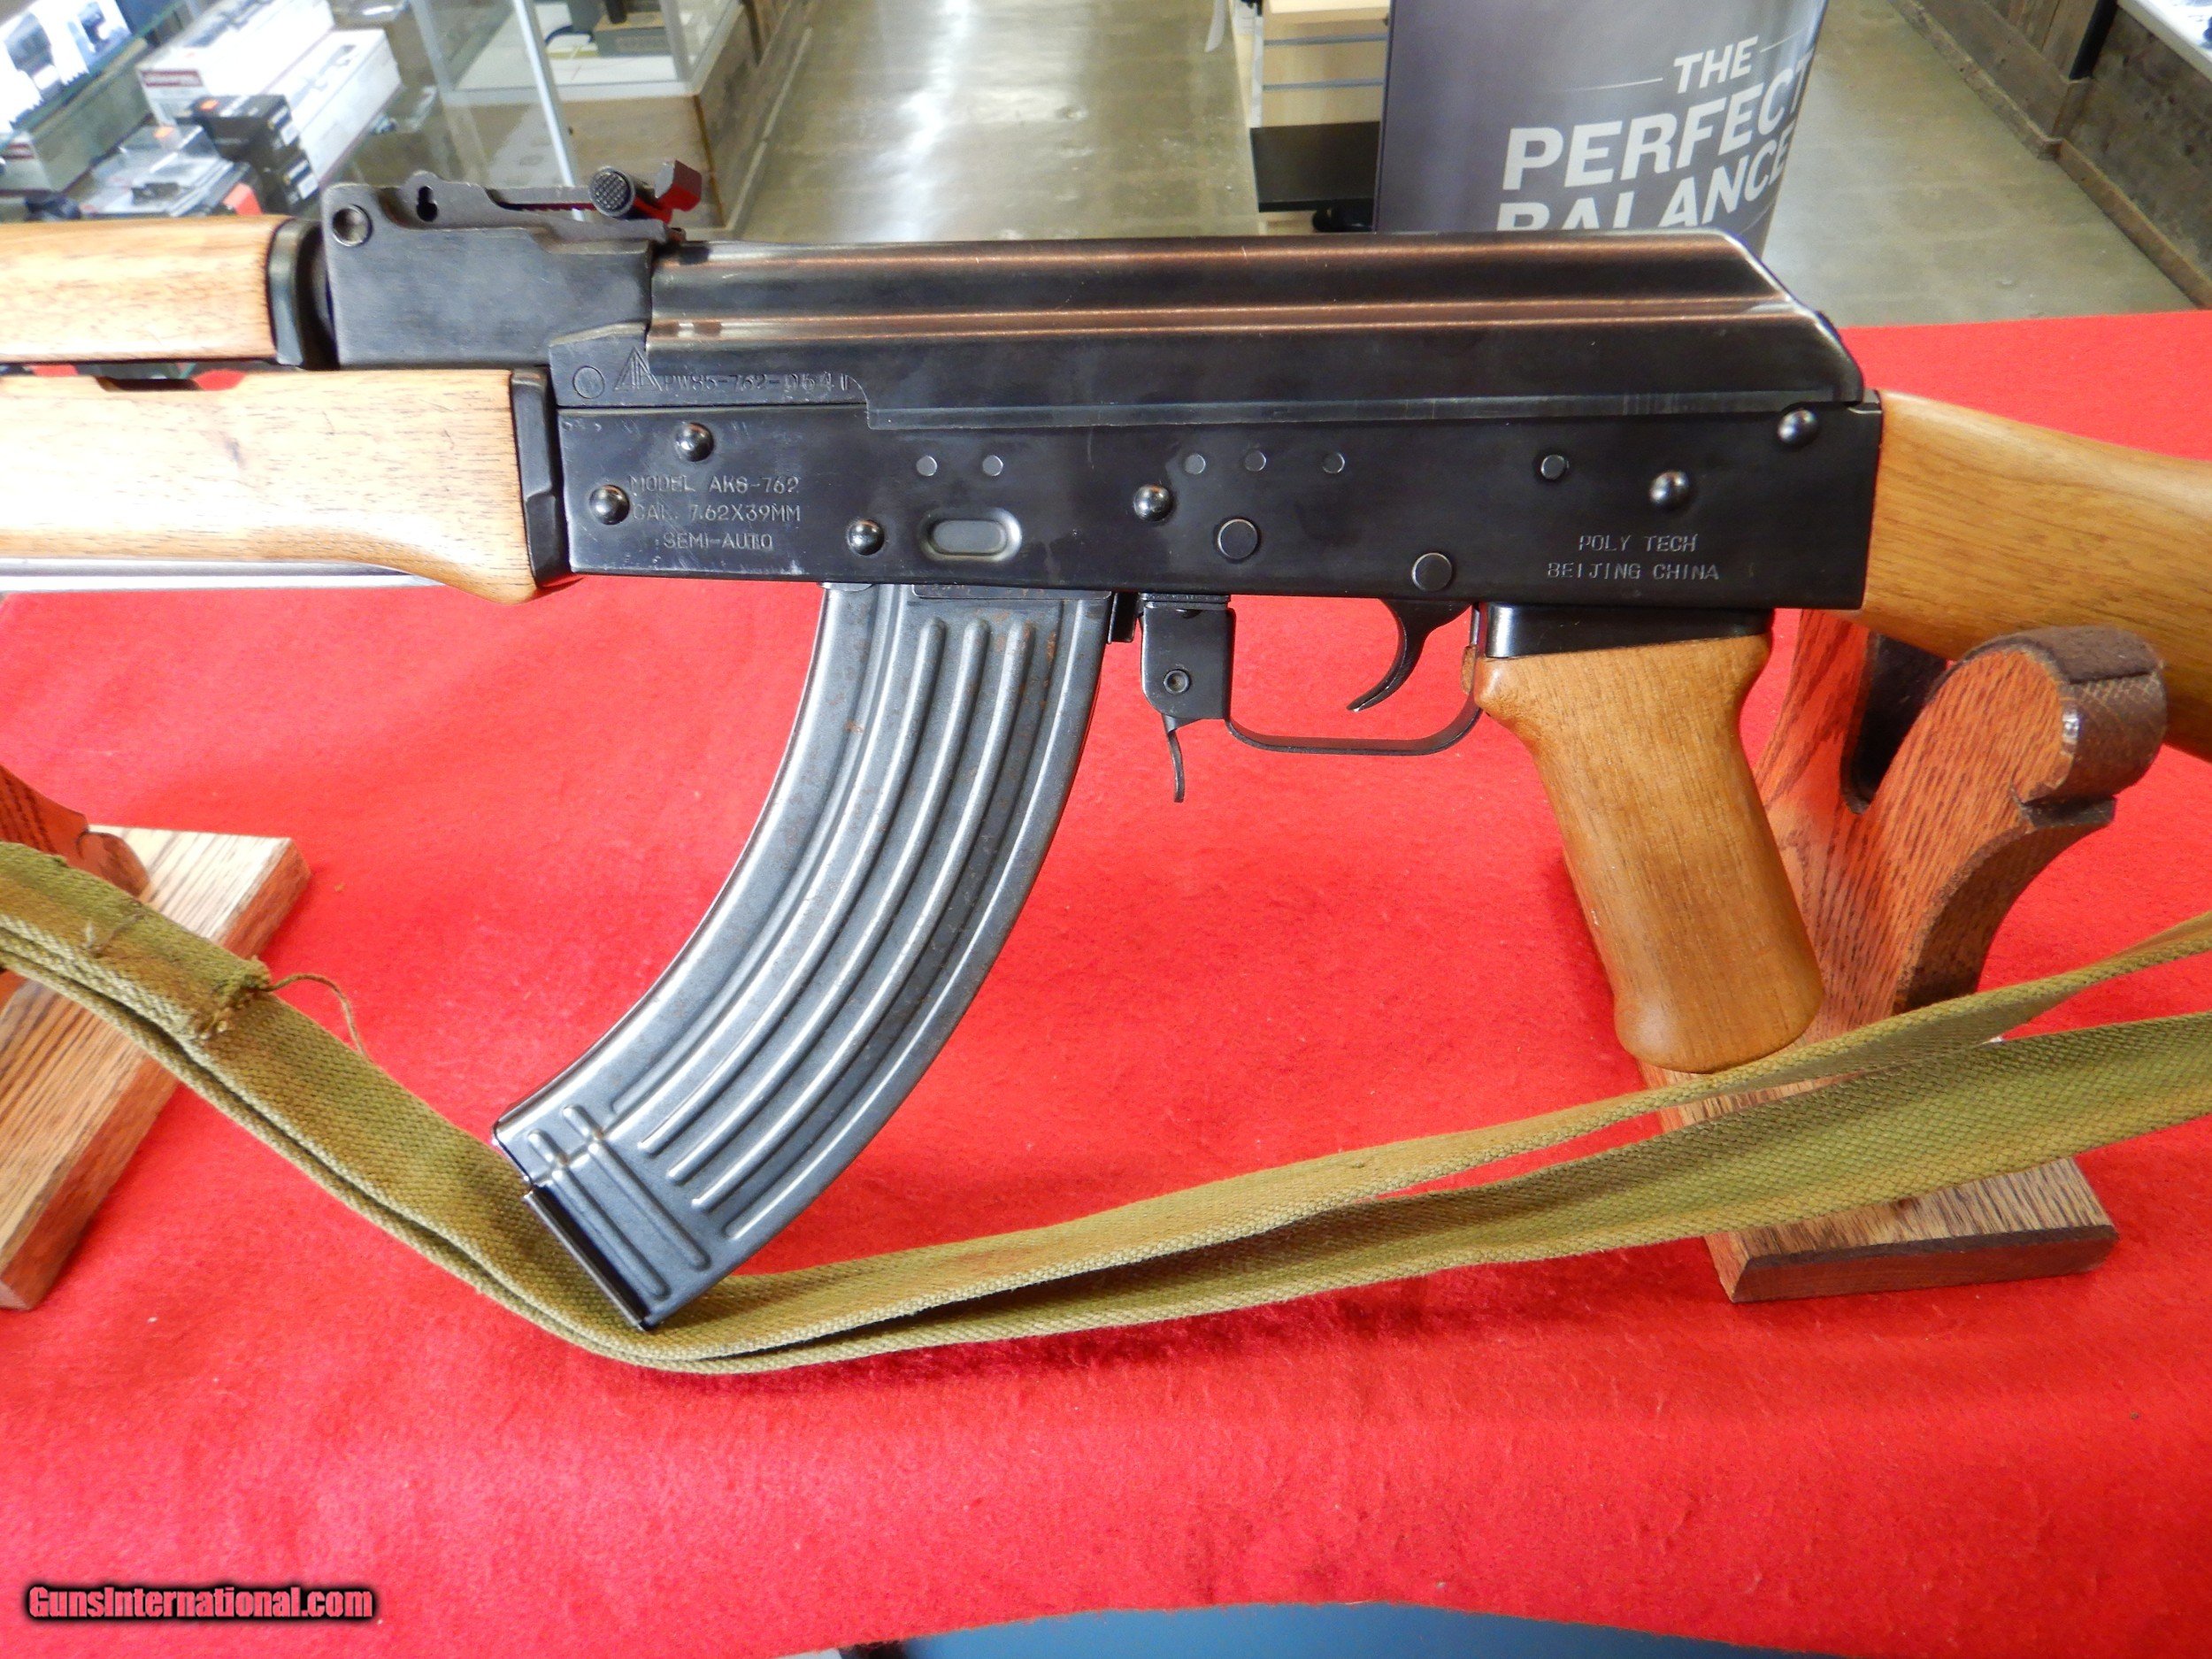 Polytech AK-47S Semi Auto Rifle Auction 7.62x39